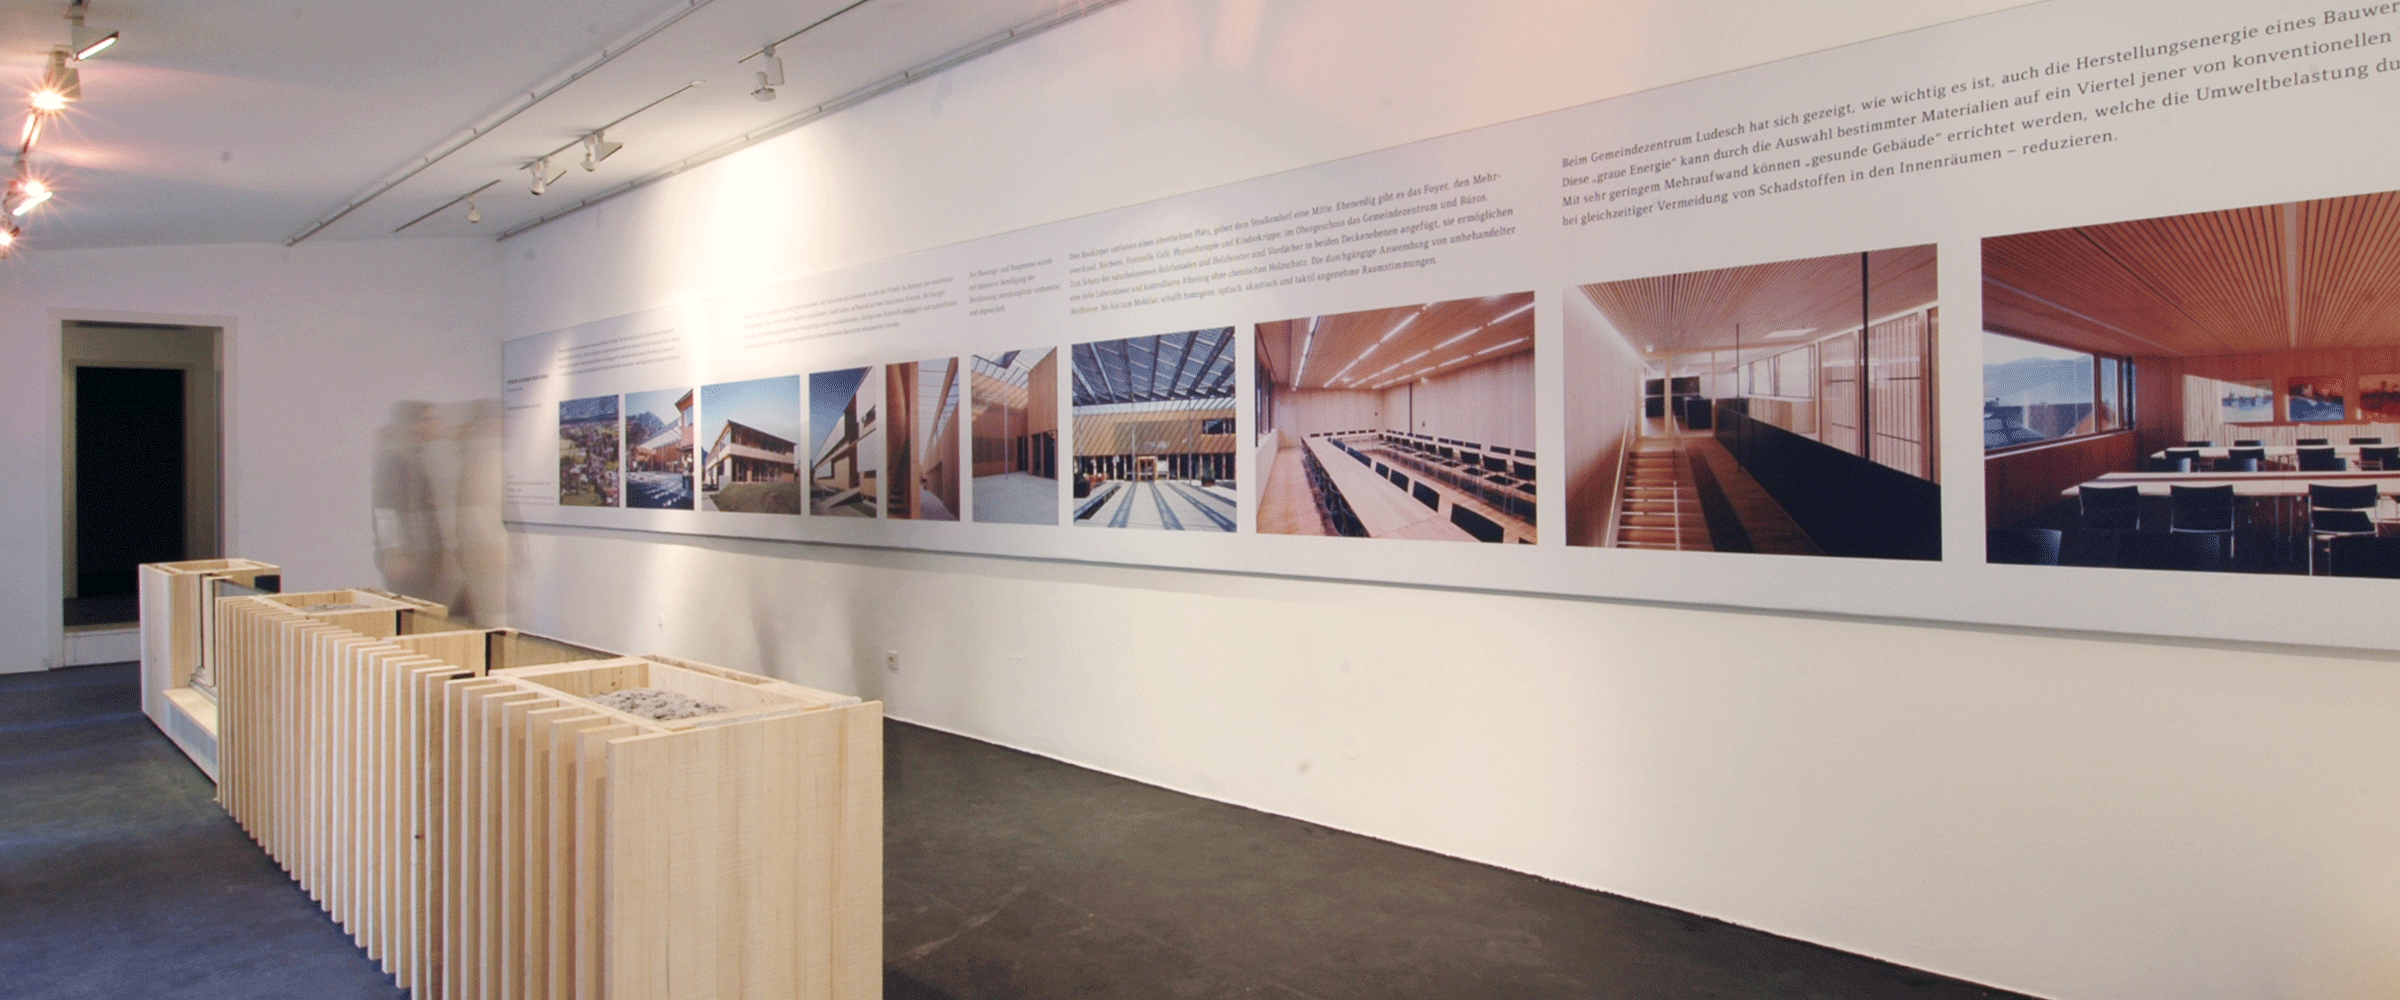 Ausstellung Wood Works in München